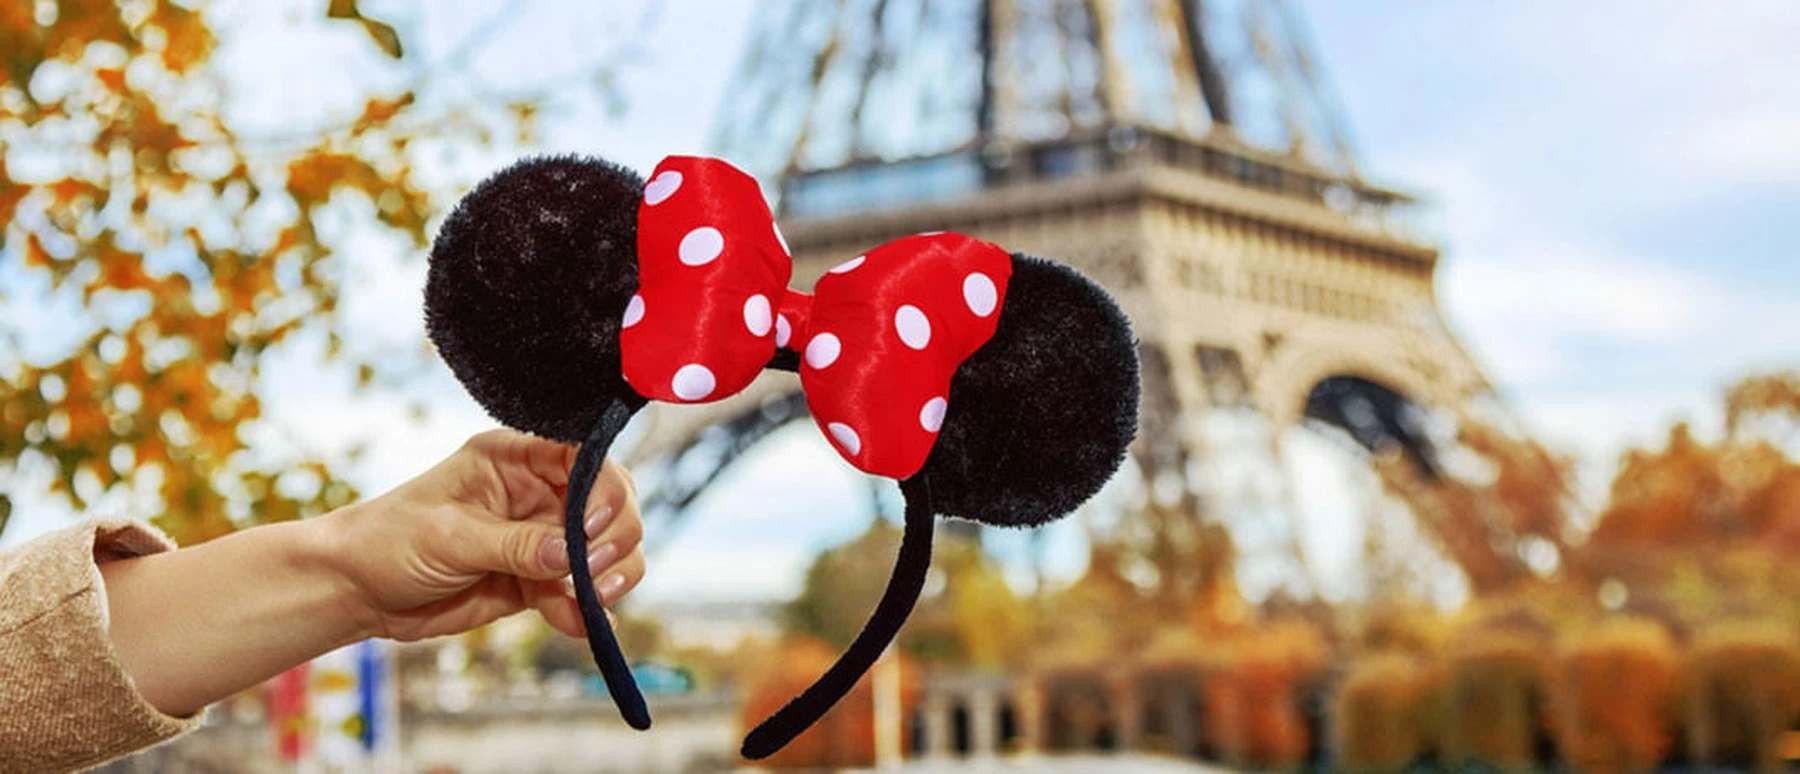 Goedkoop naar Disneyland Parijs? Het kan met deze 5 handige tips